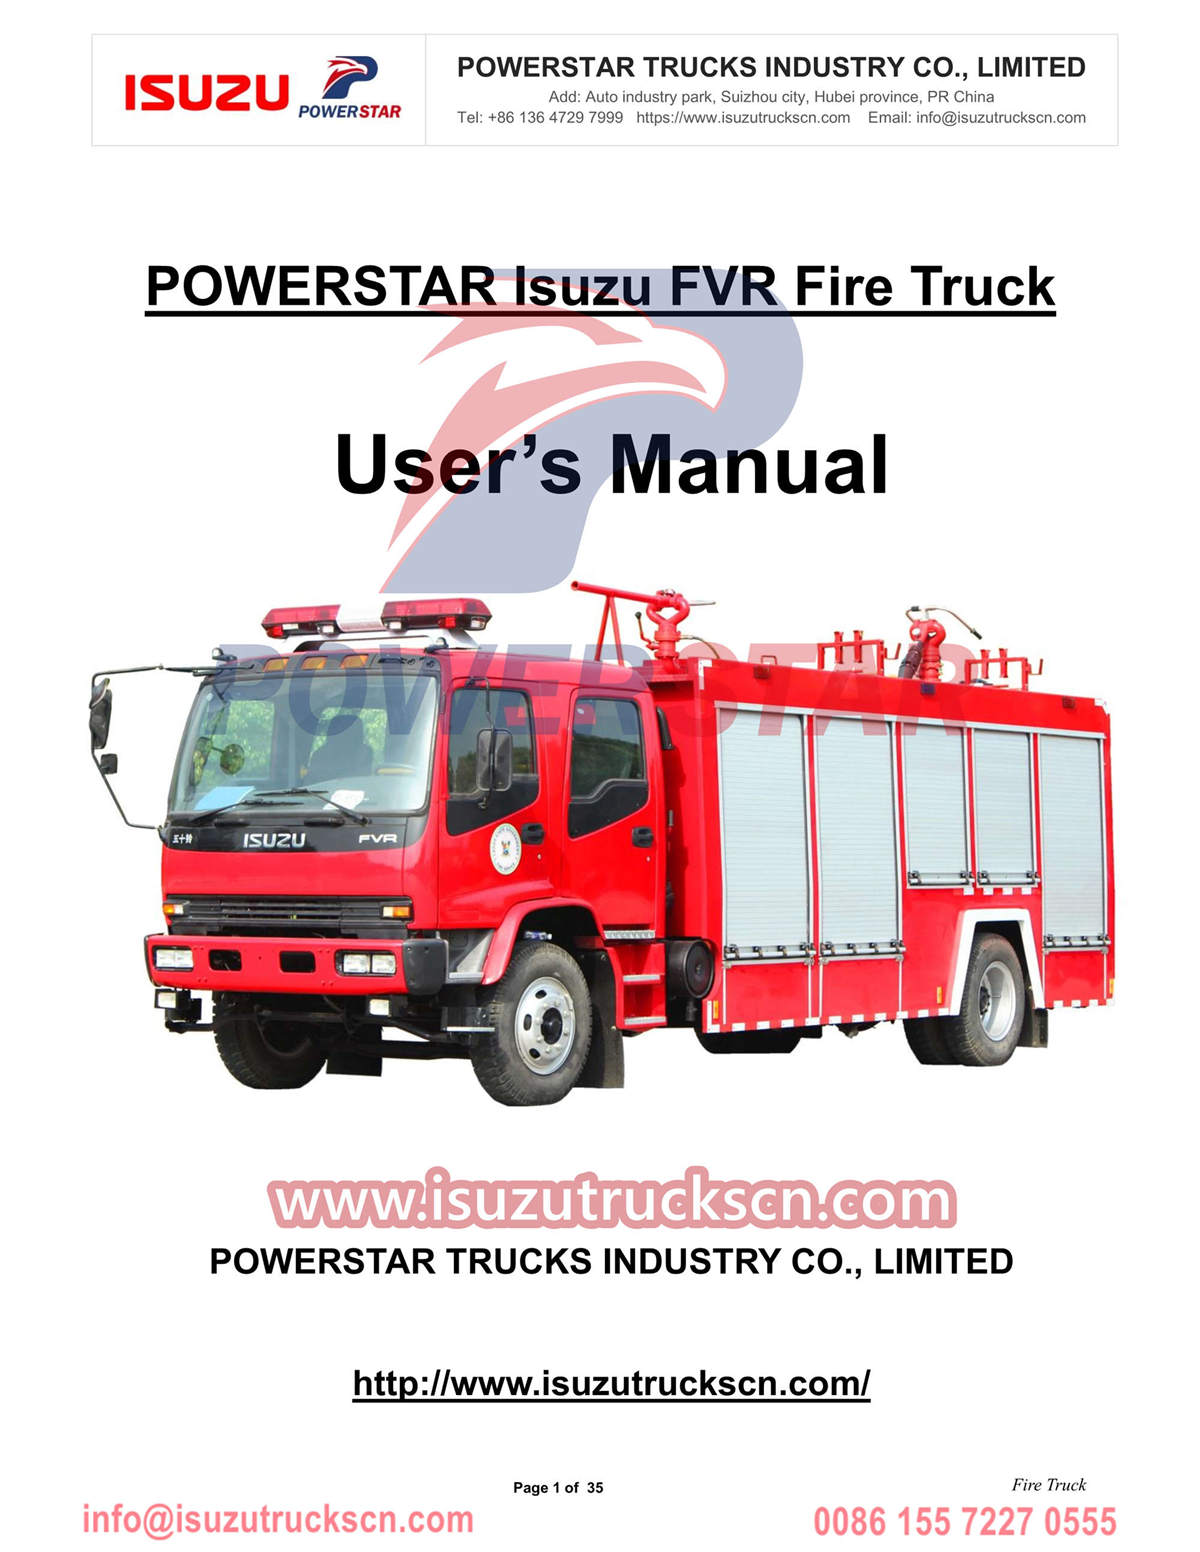 Пожарная машина Isuzu FVR 6cbm с ручным управлением, экспорт в Нигерию
        